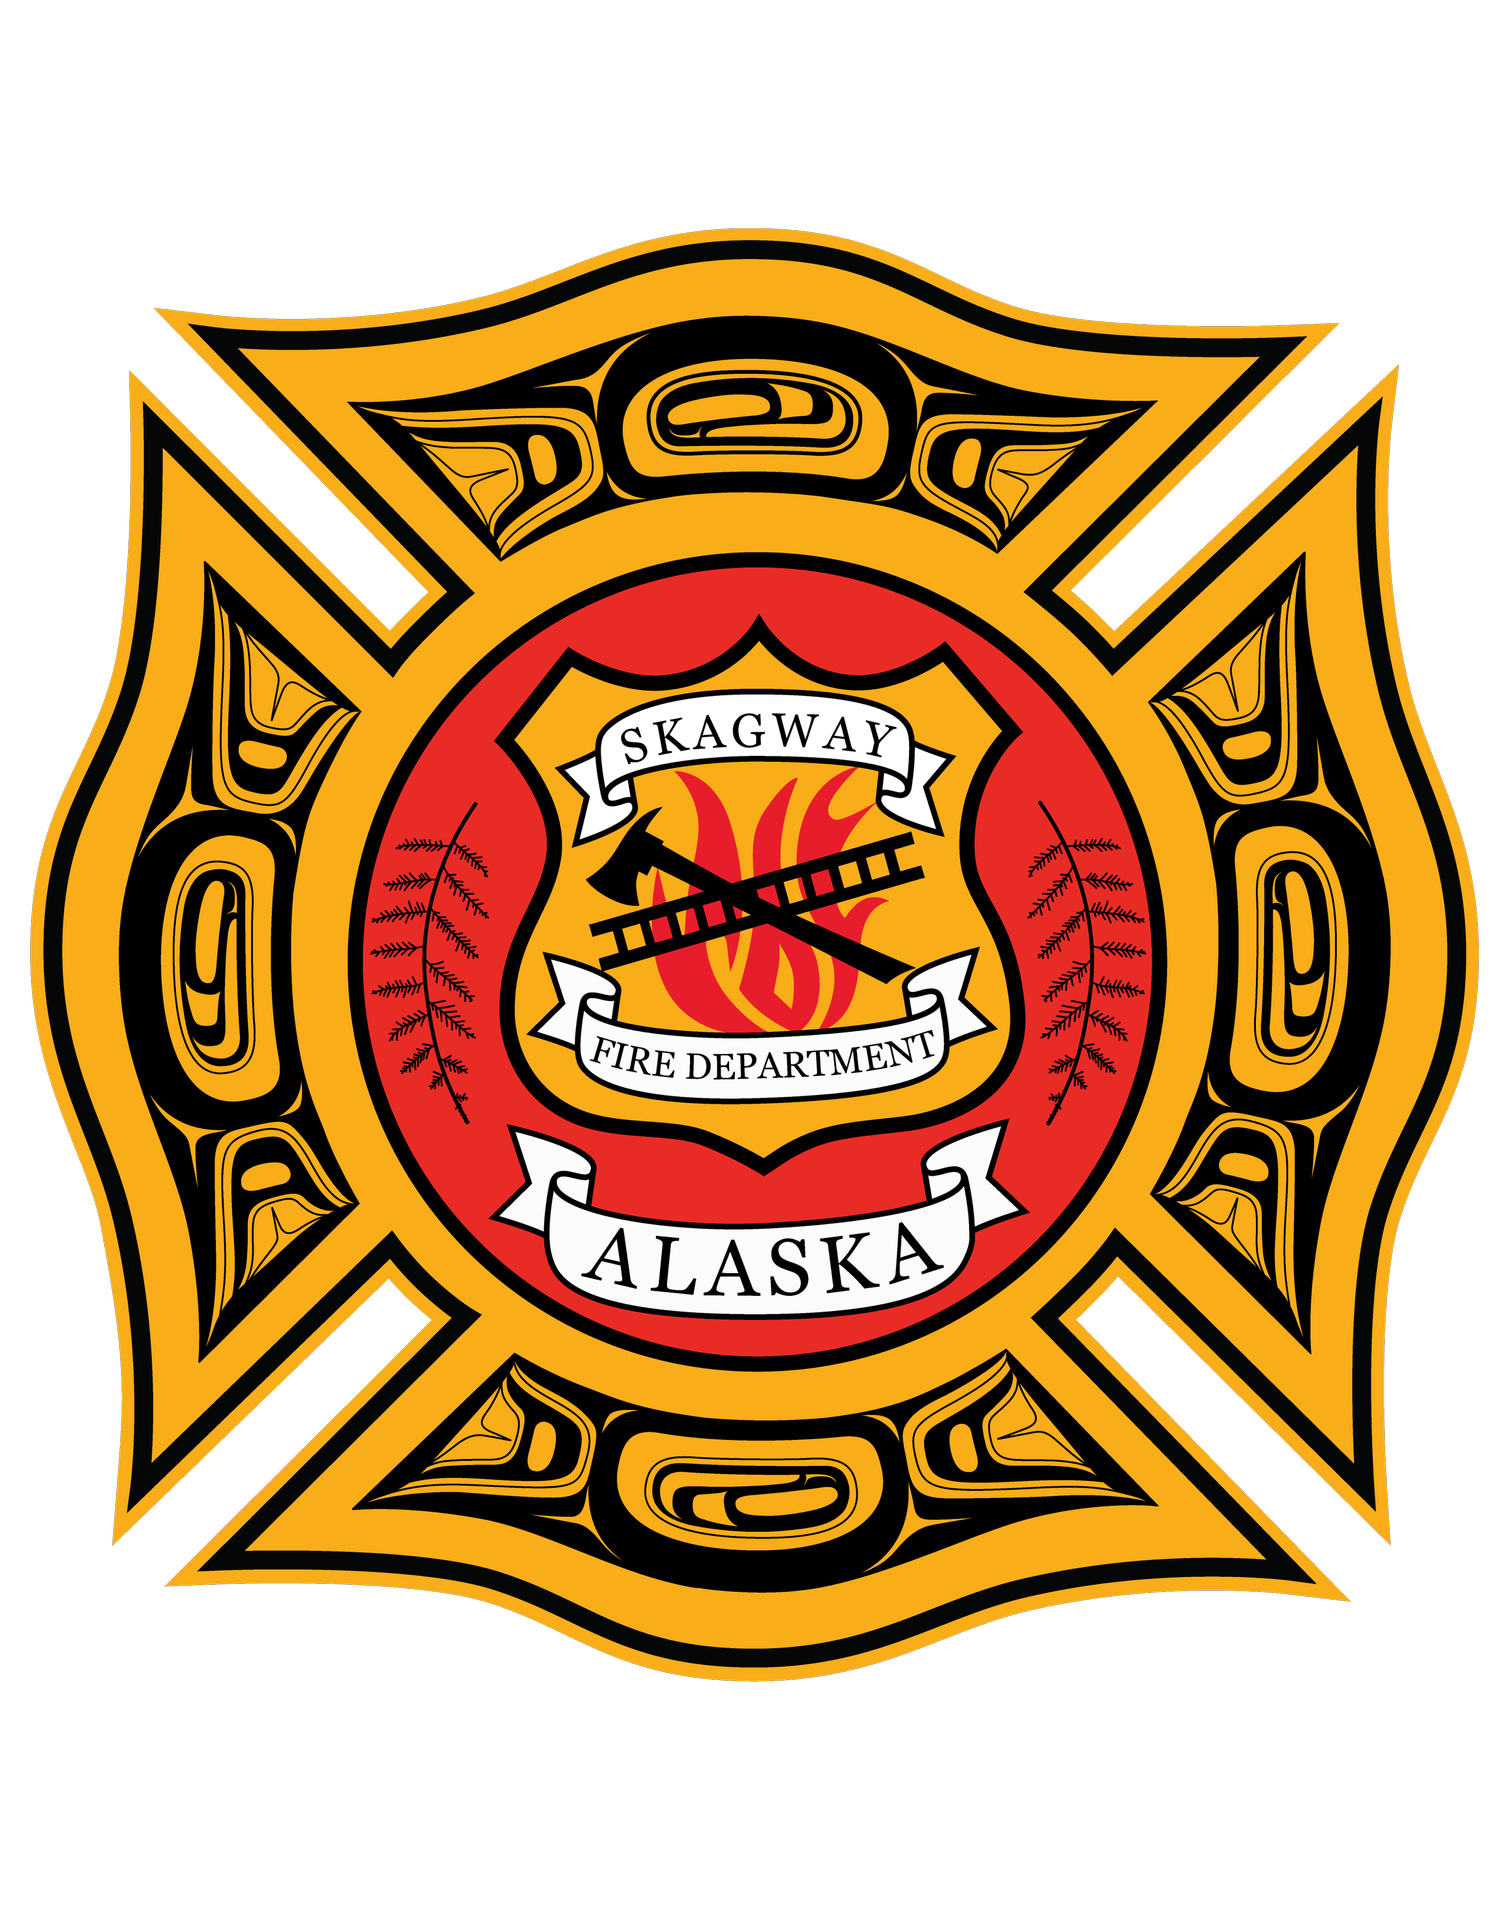 Skagway Fire Department